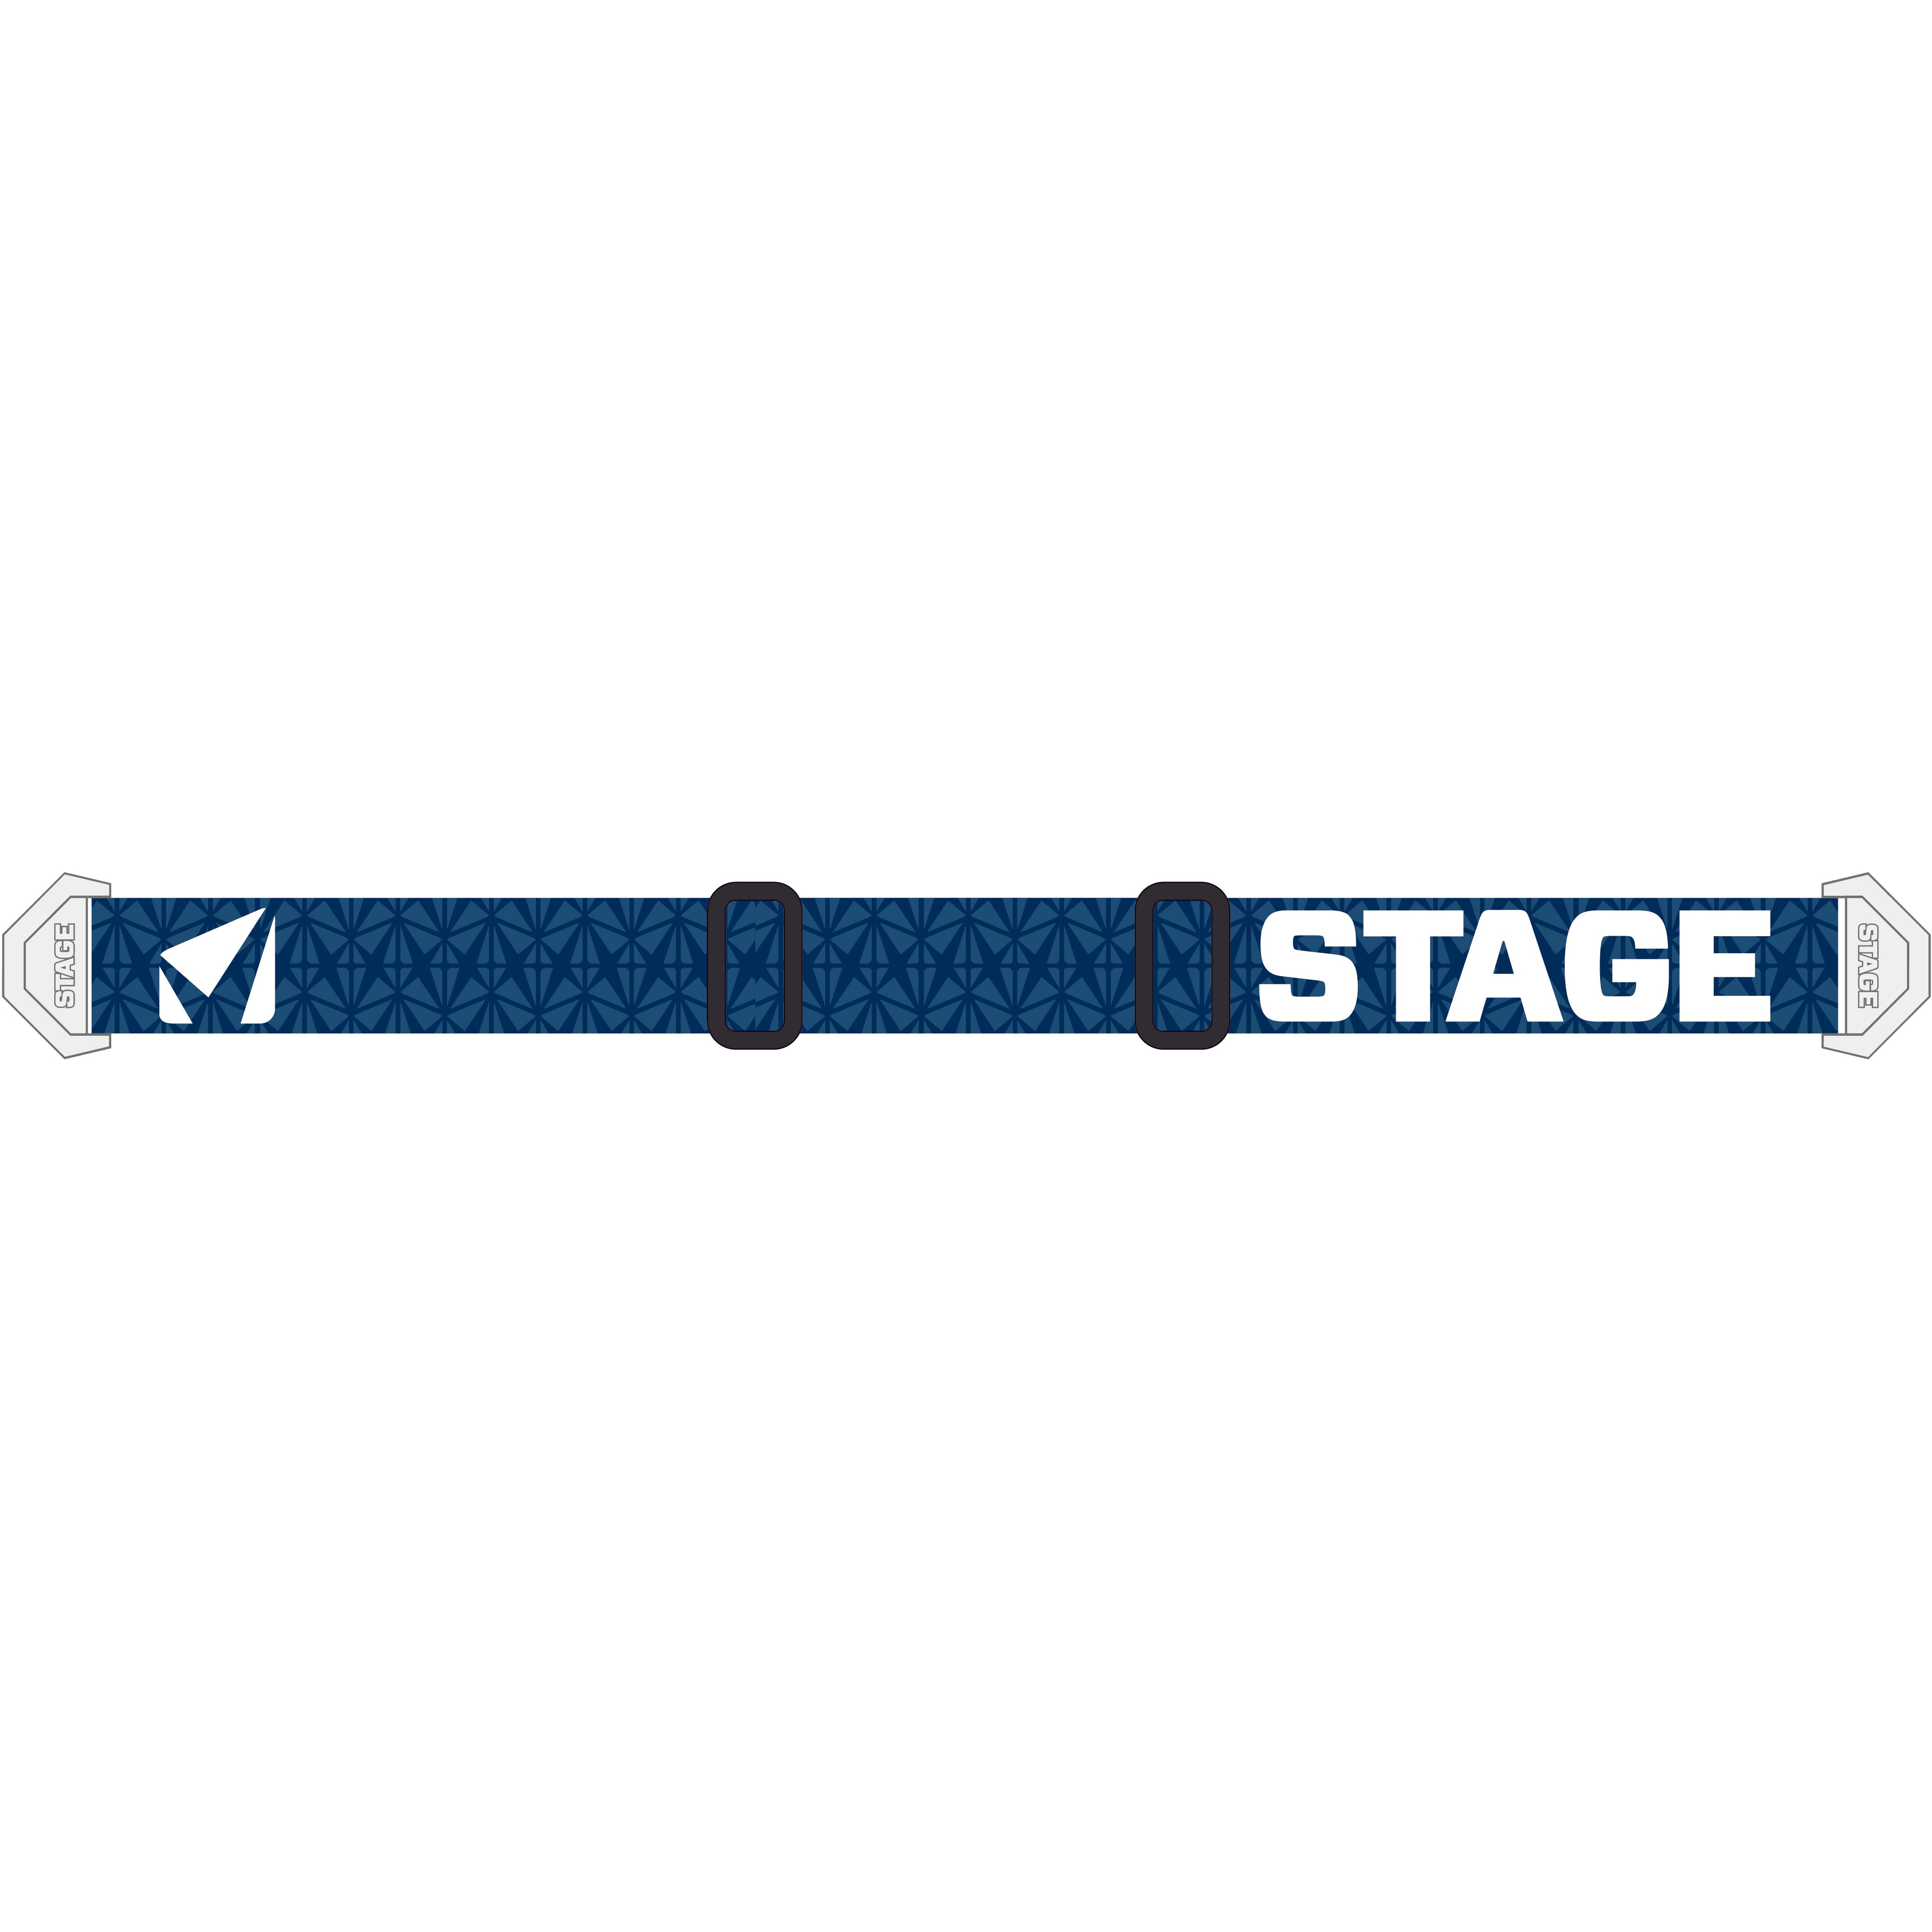 StageStuntStrap-BlueandWhiteRepeat.jpg